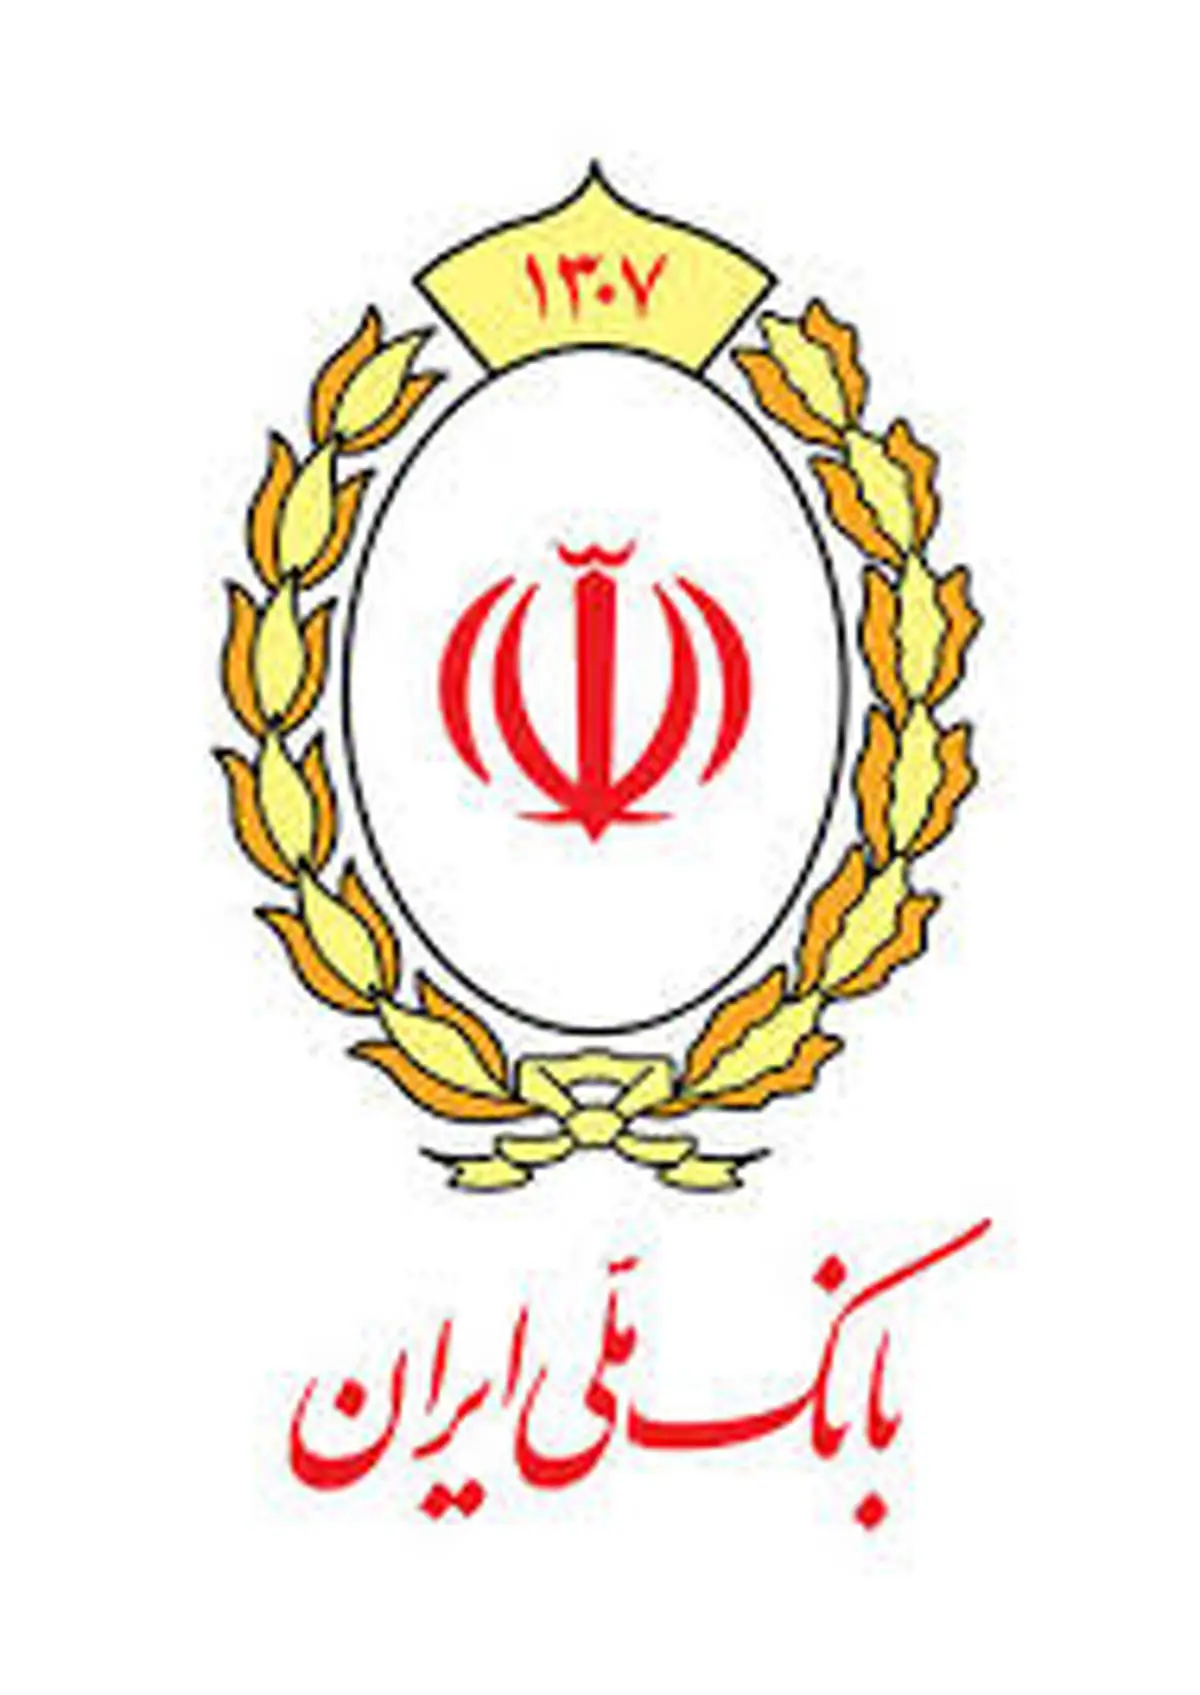 اقدامات سیستماتیک بانک ملی ایران برای آزادسازی منابع محبوس

